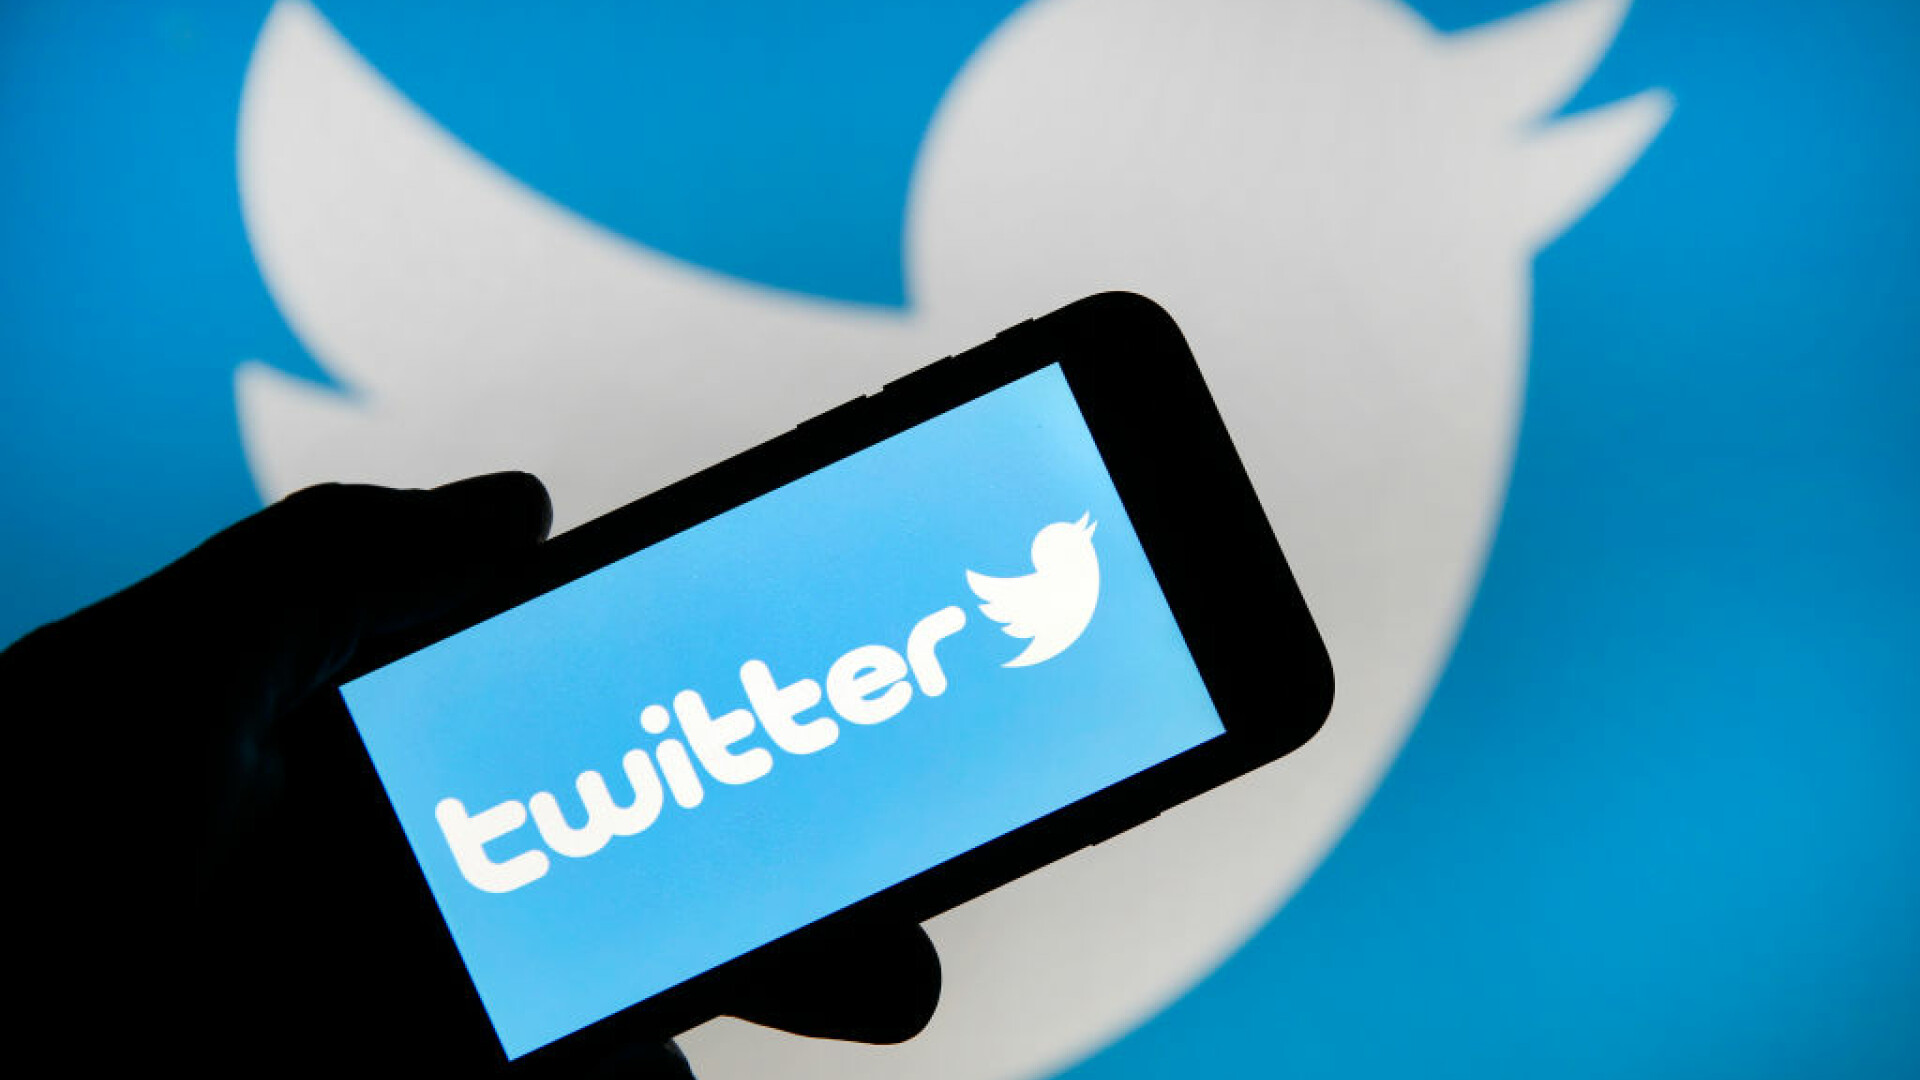 Twitter lansează primul abonament cu funcţii suplimentare. Ce noutăți aduce